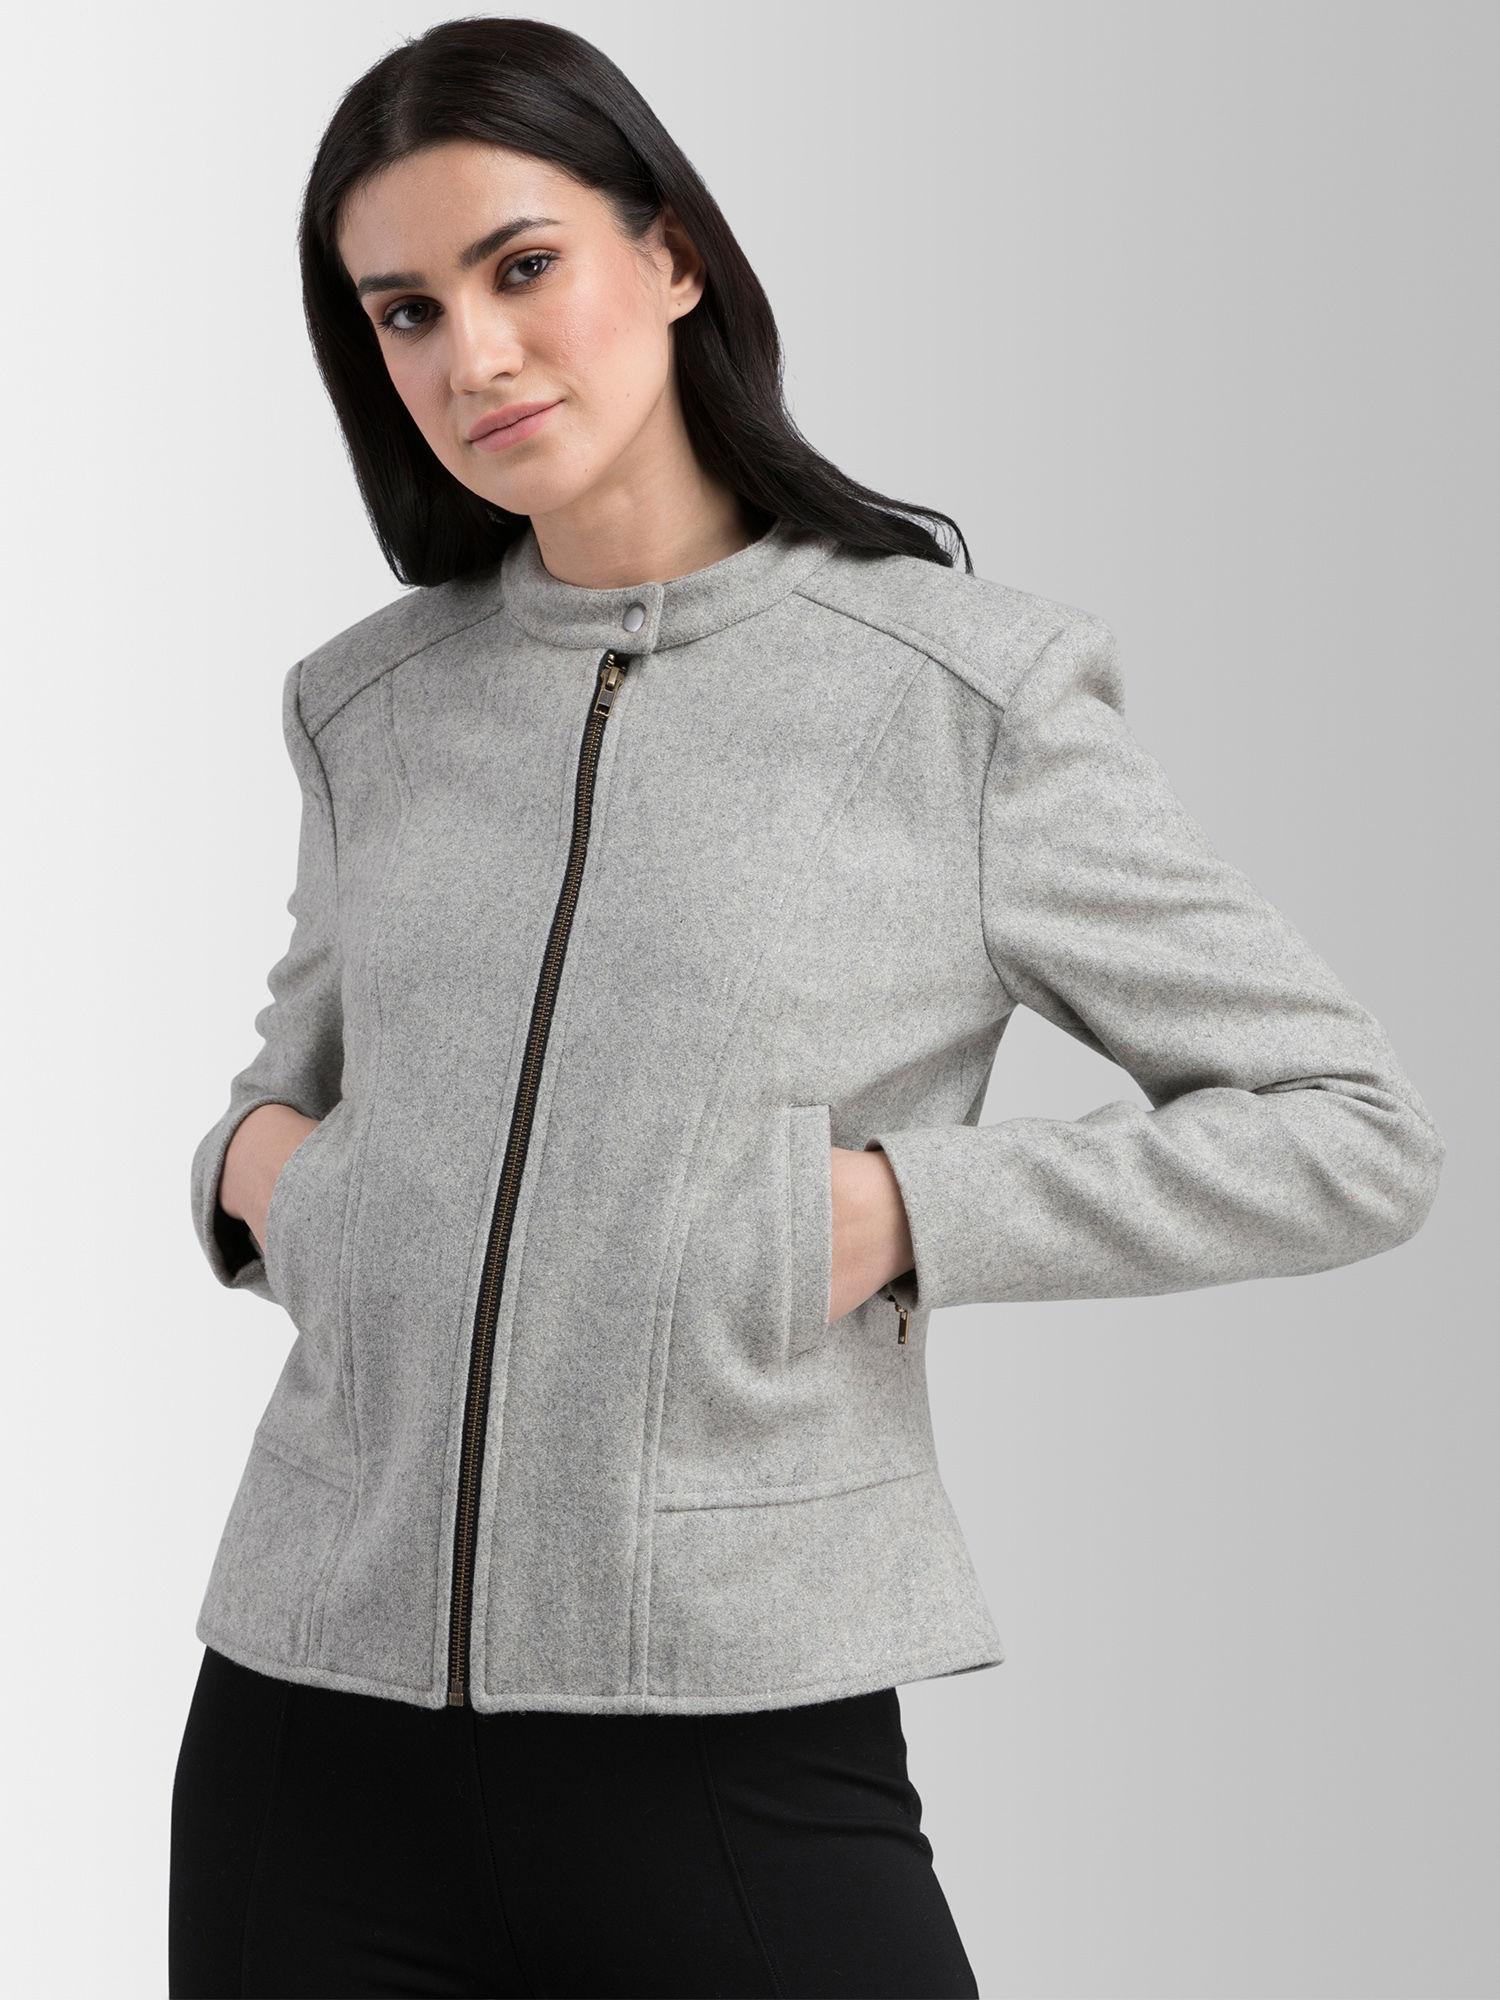 grey solid jacket